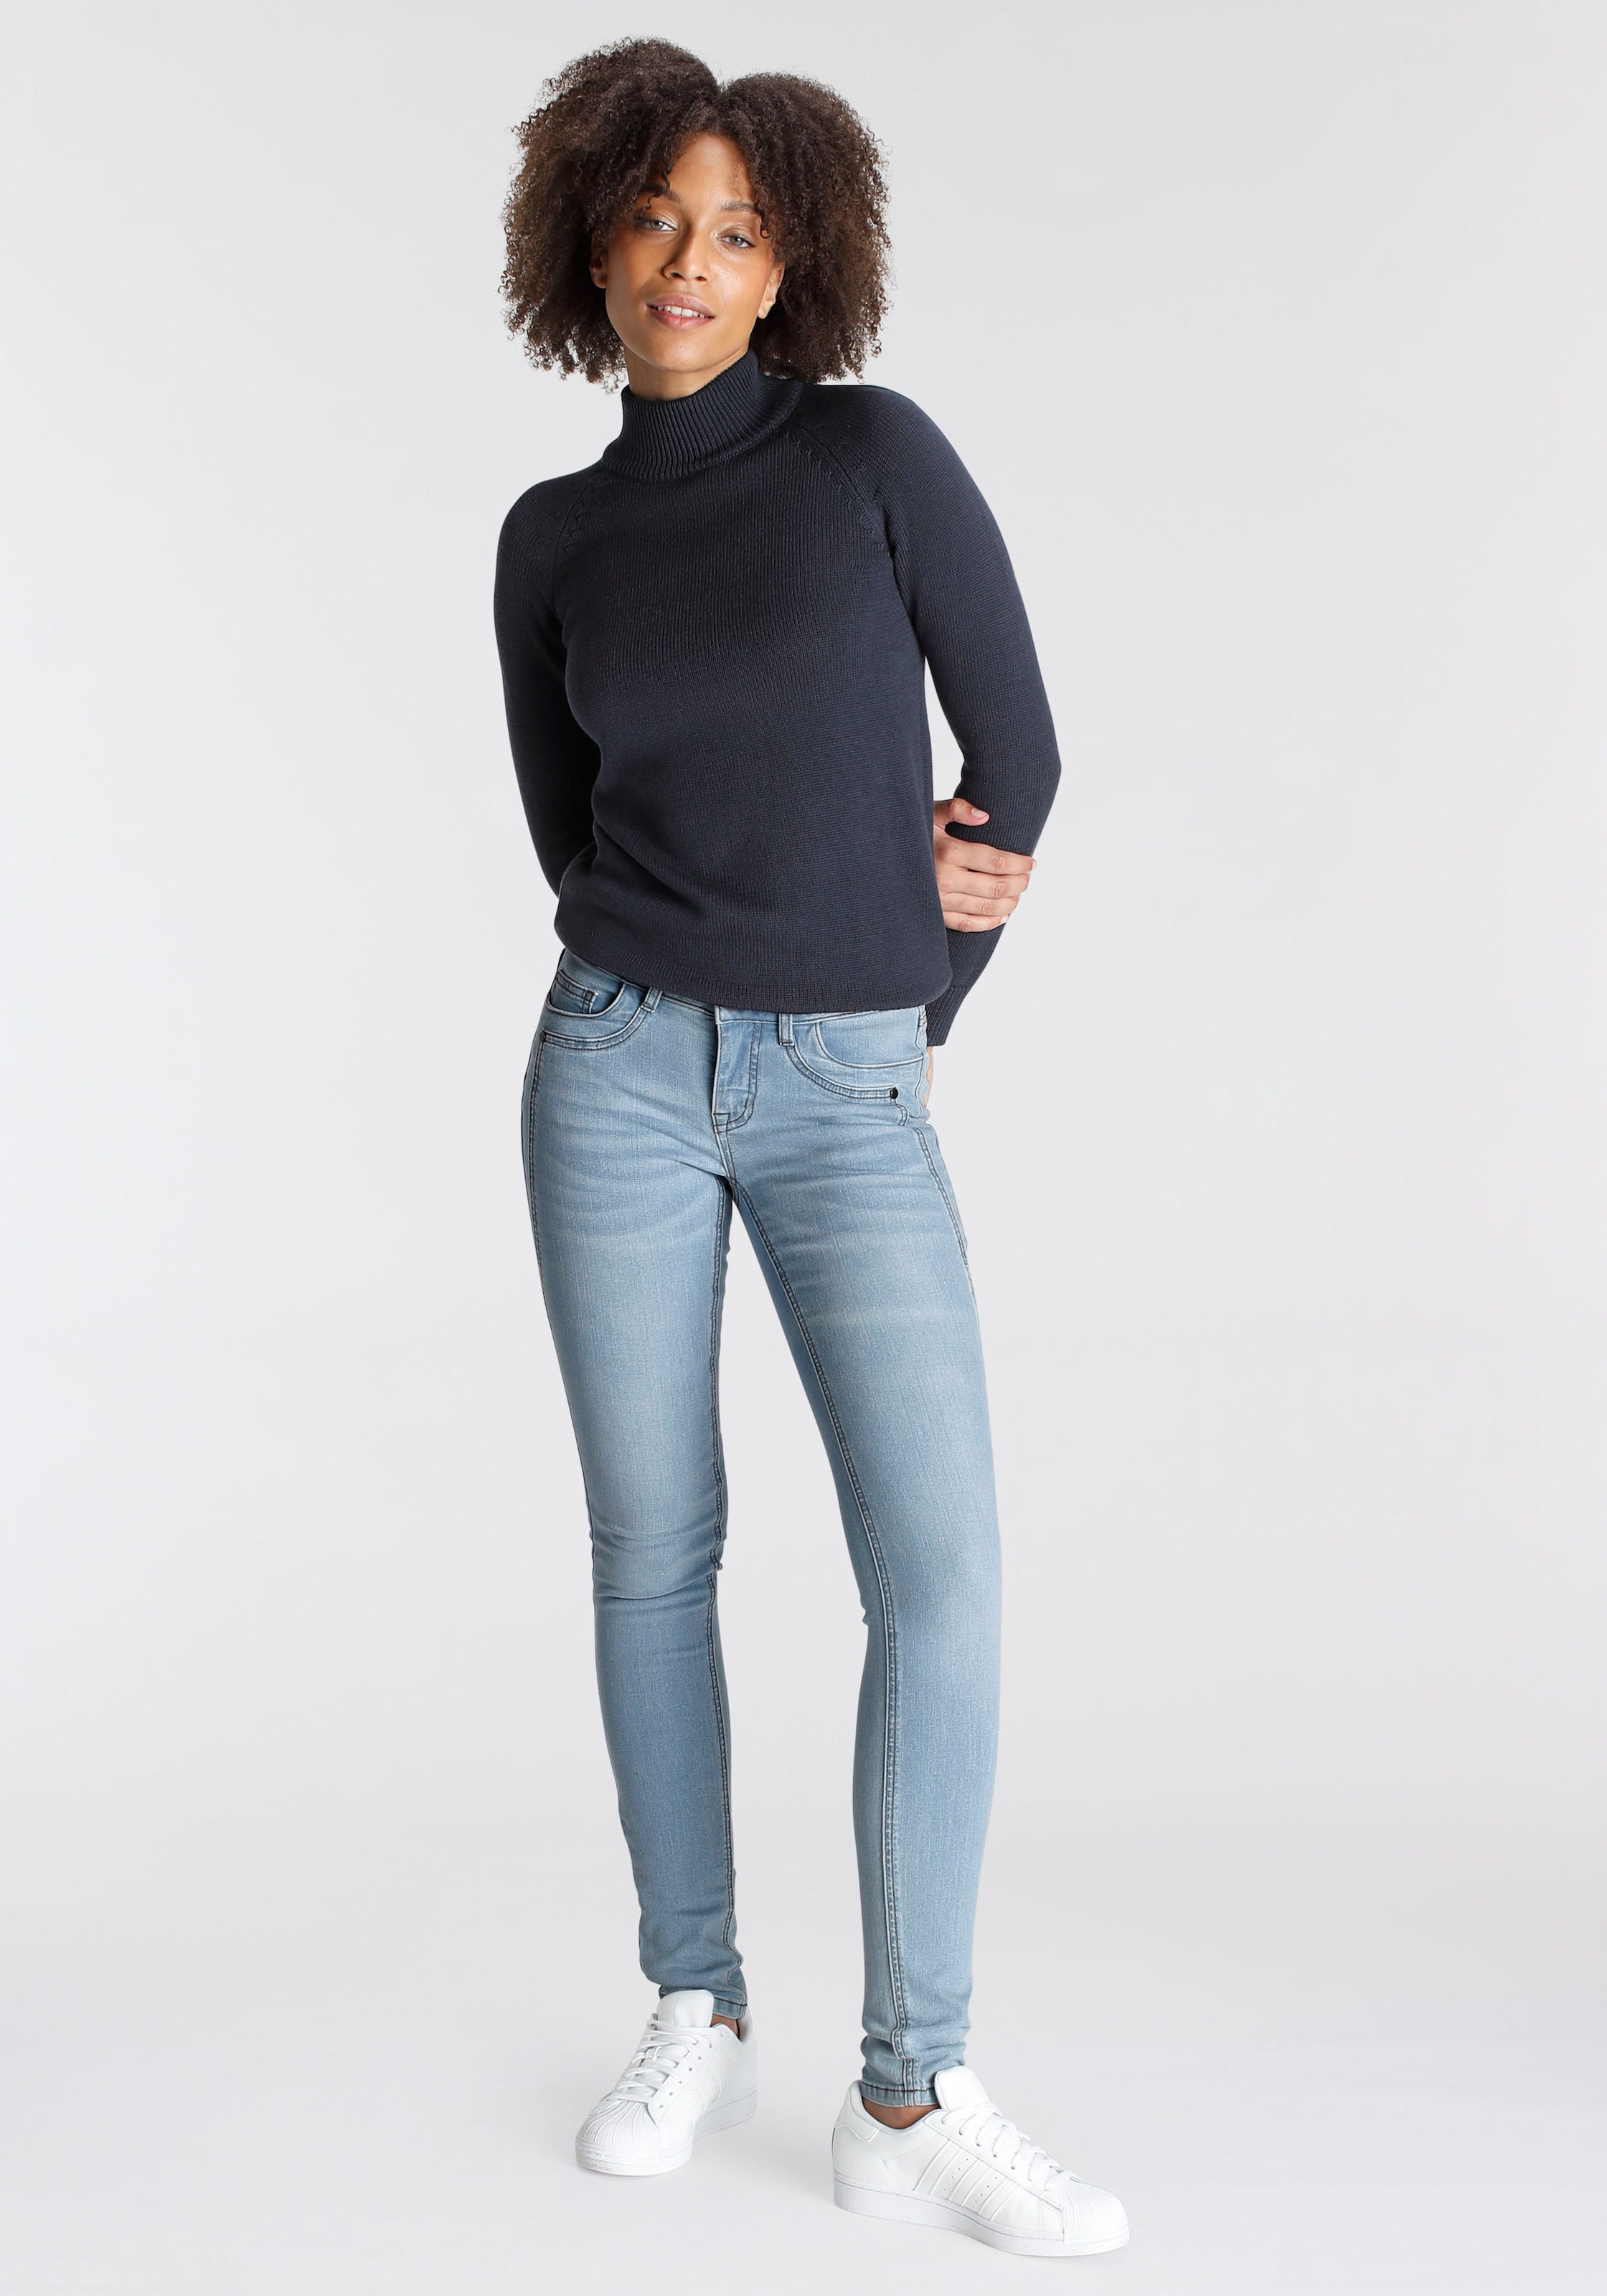 Schweiz online Arizona Waist shoppen Jelmoli-Versand Low »mit Skinny-fit-Jeans Keileinsätzen«, bei